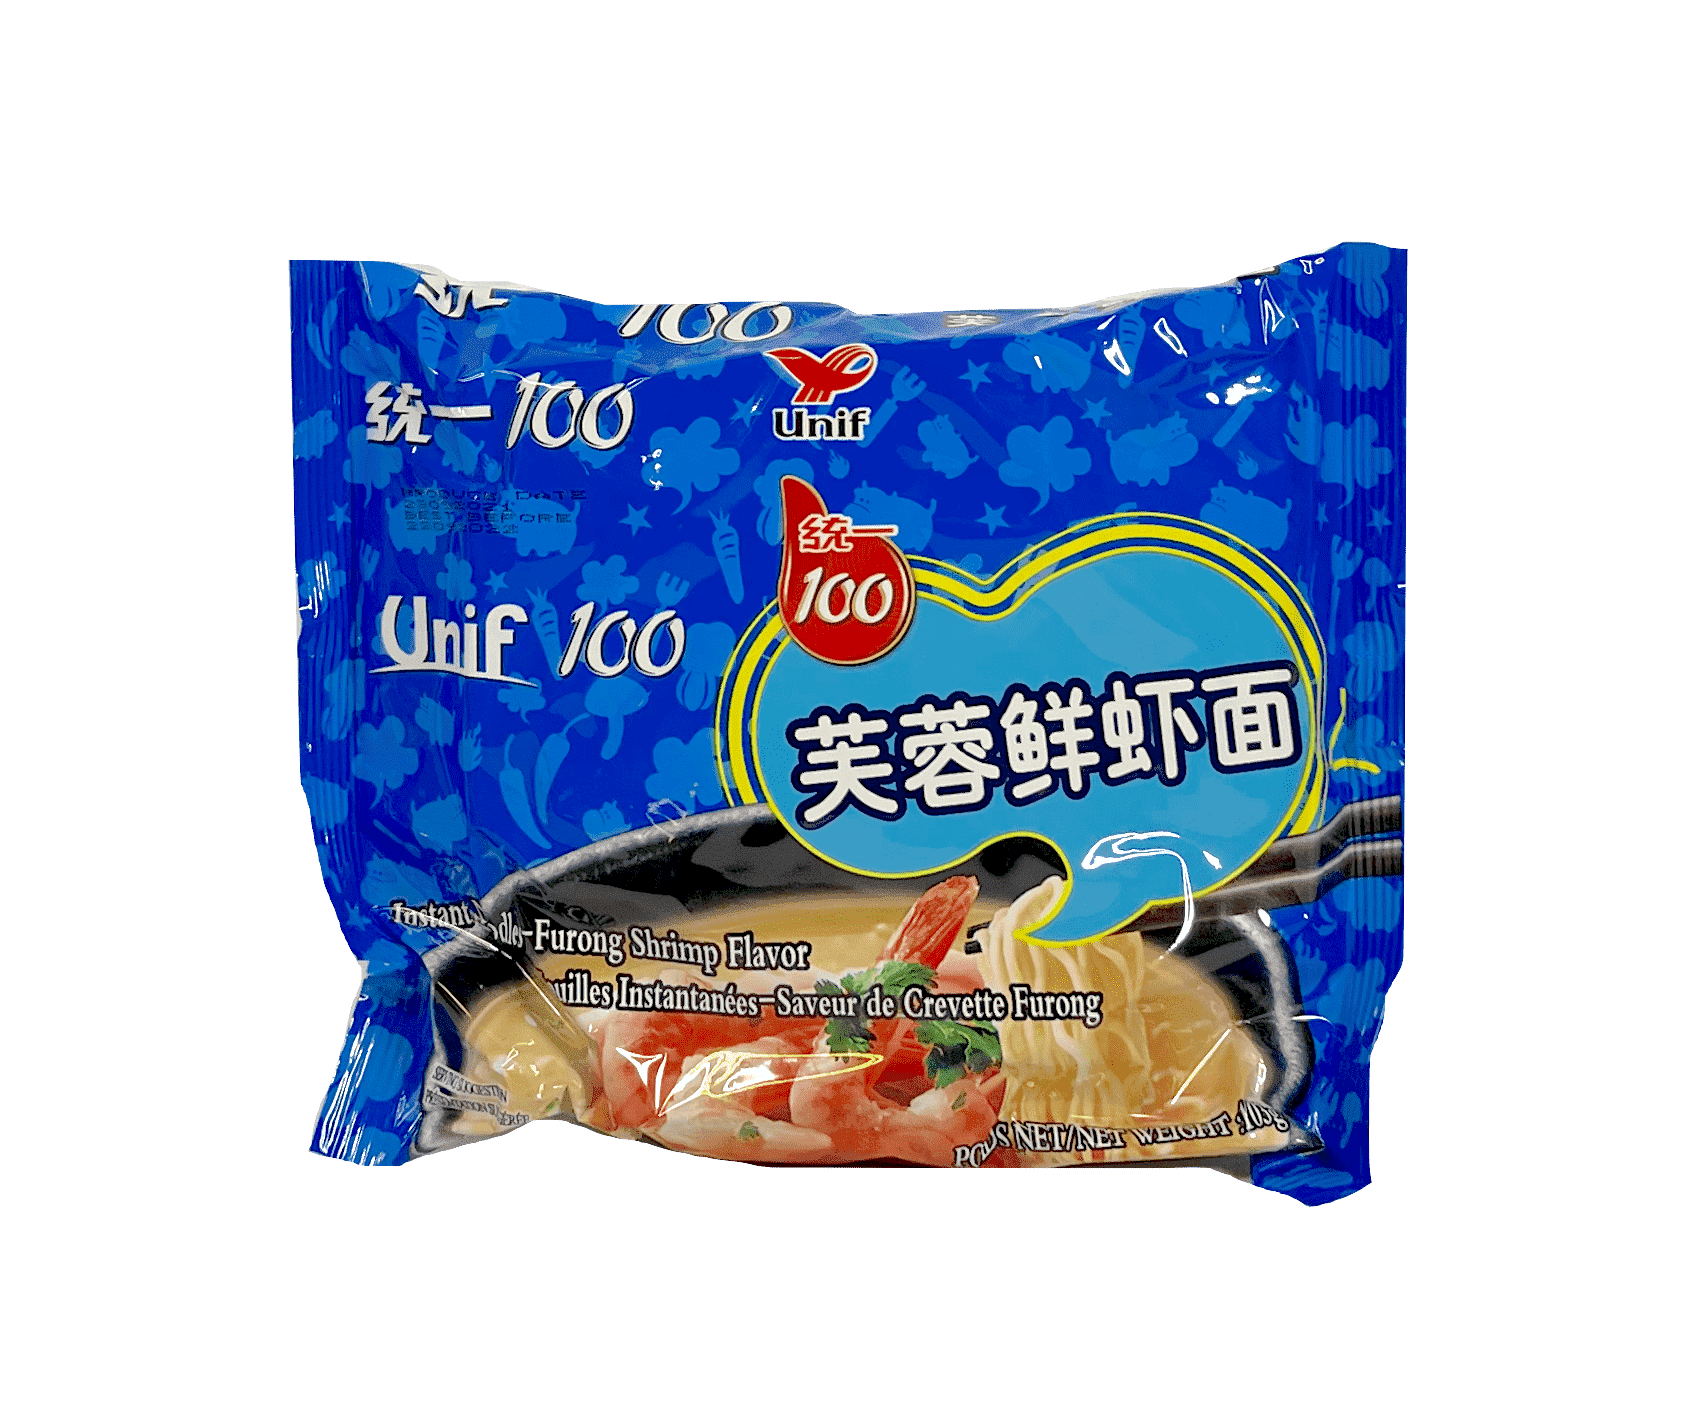 Shrimp Noodles With Shrimp Flavour 103g Unif 100 China